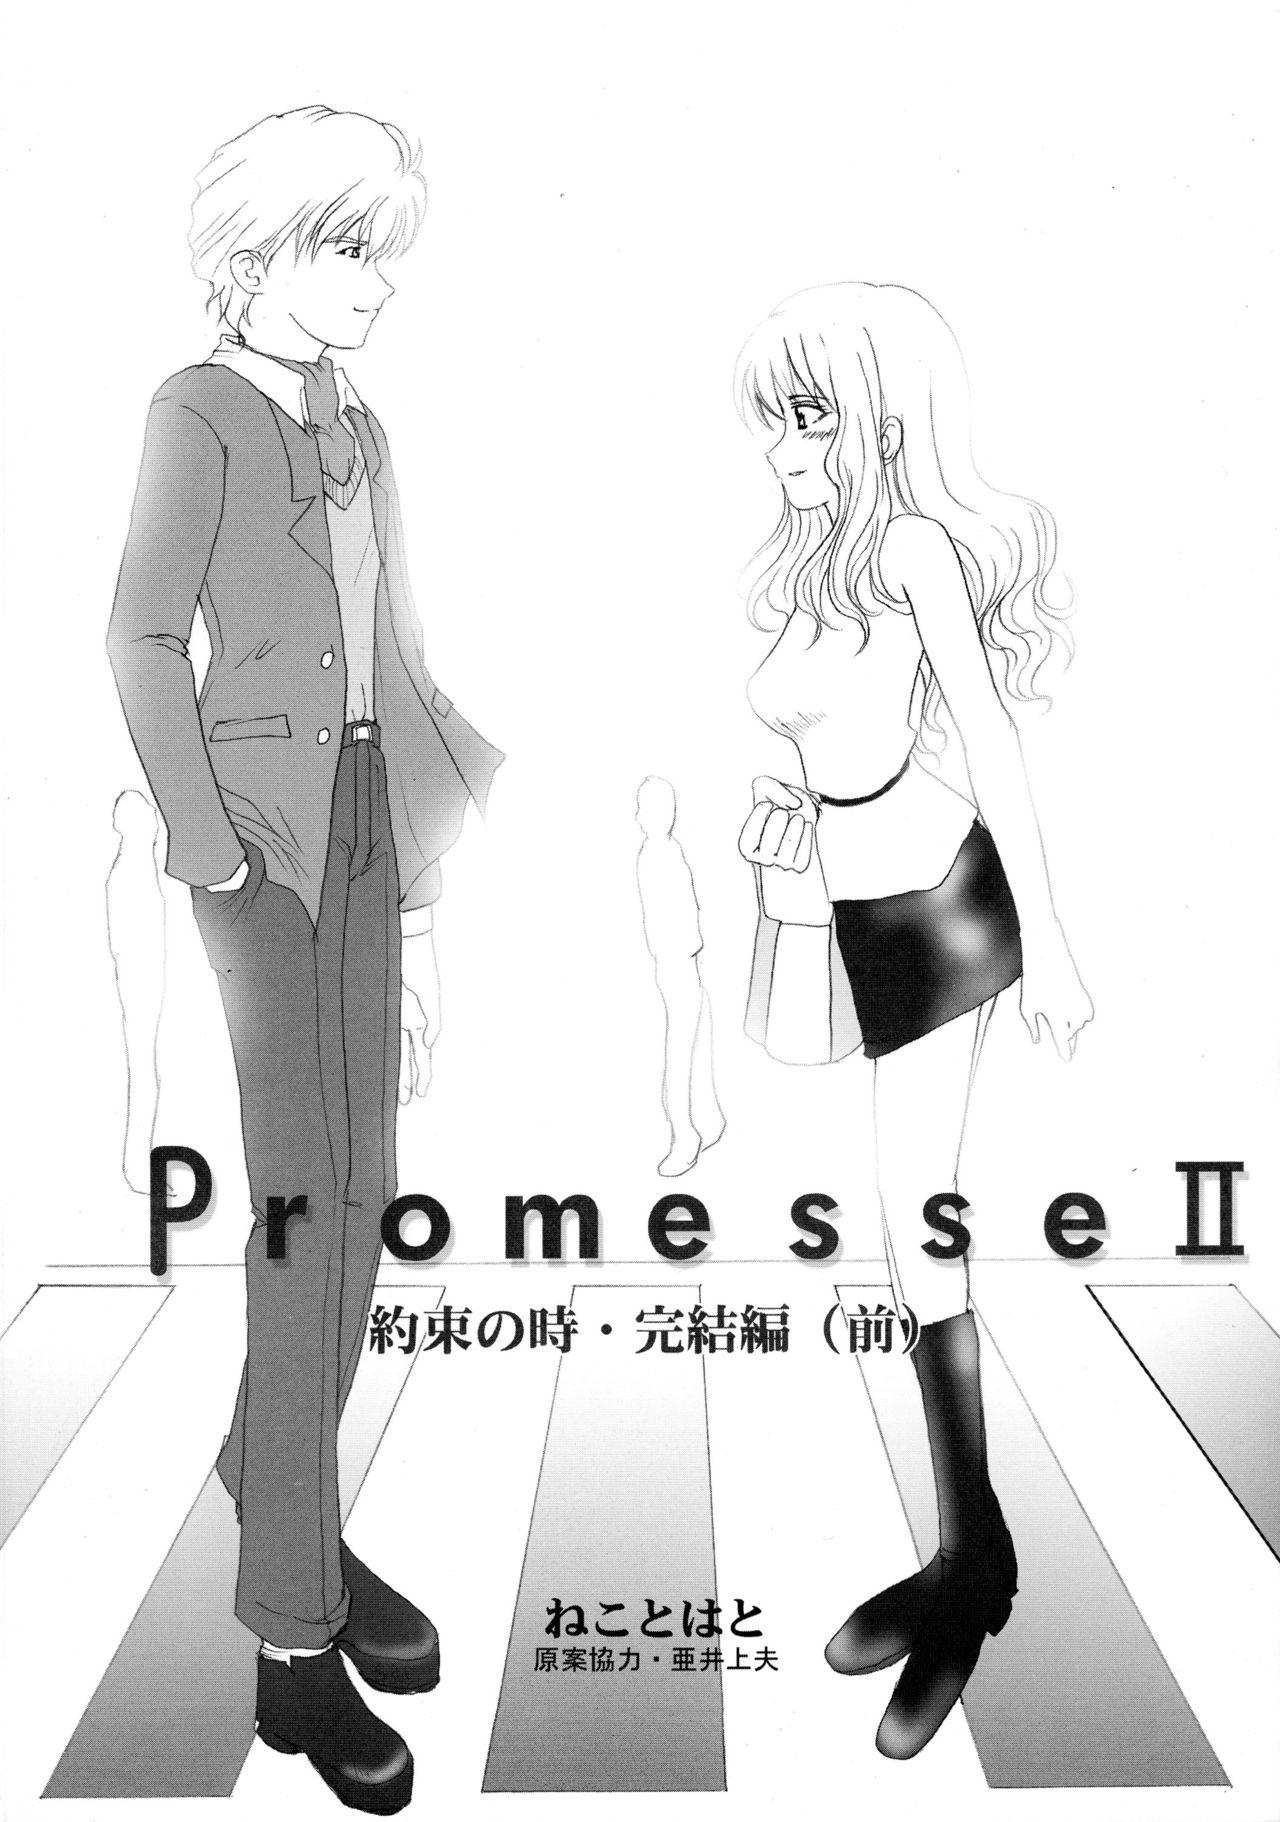 Promesse II Yakusoku no Toki Kanketsuhen 14